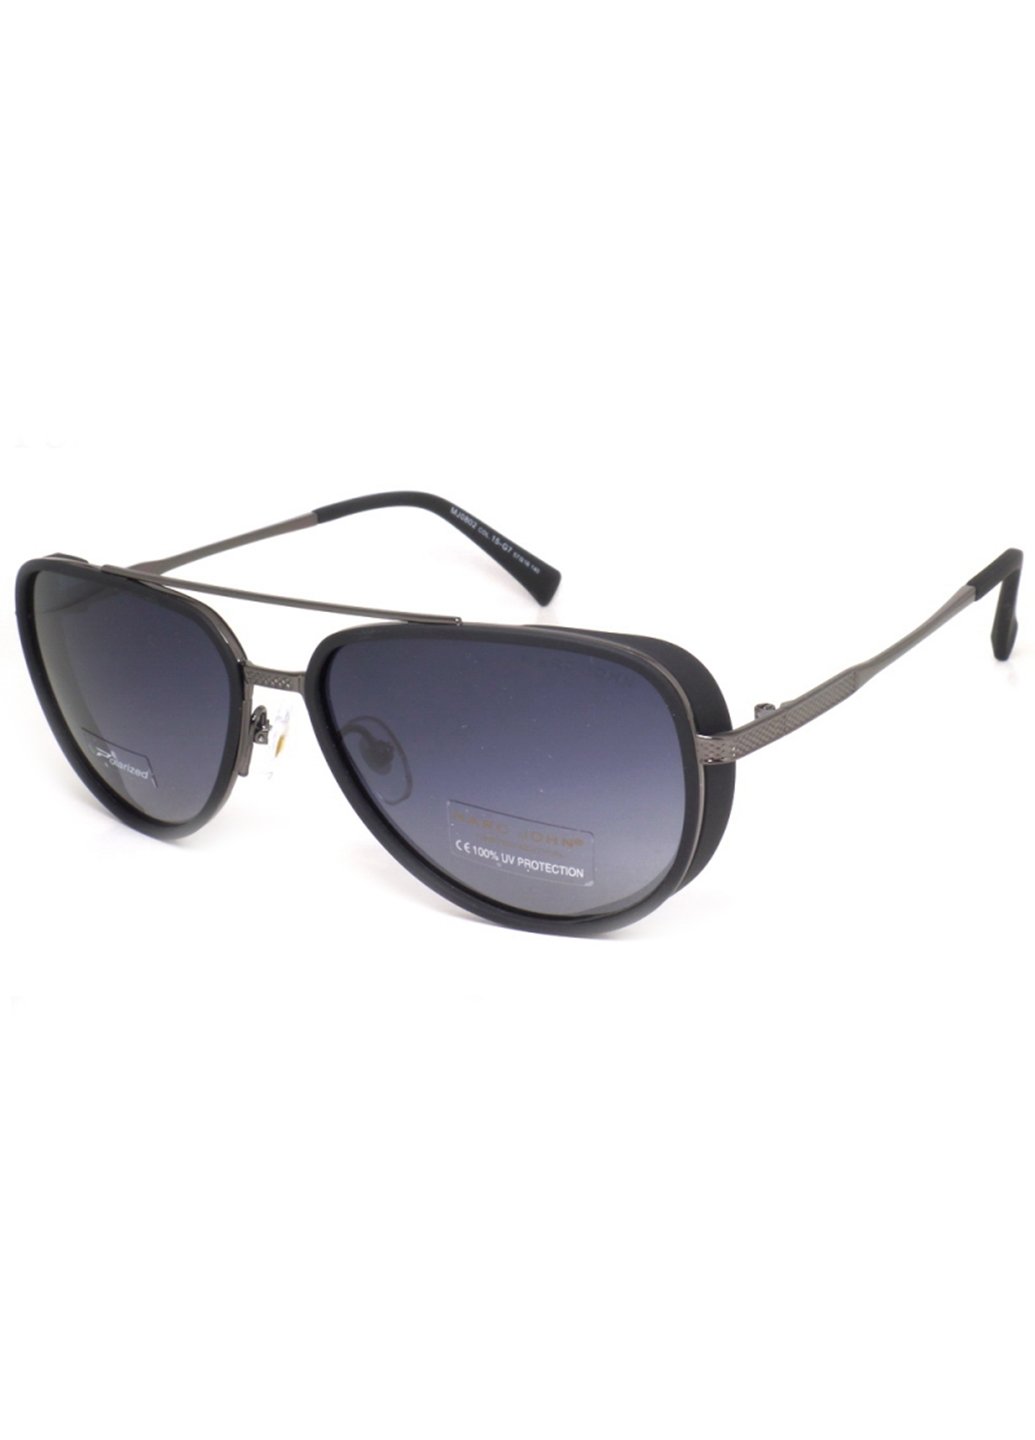 Купить Мужские солнцезащитные очки Marc John с поляризацией MJ0802 190004 - Синий в интернет-магазине